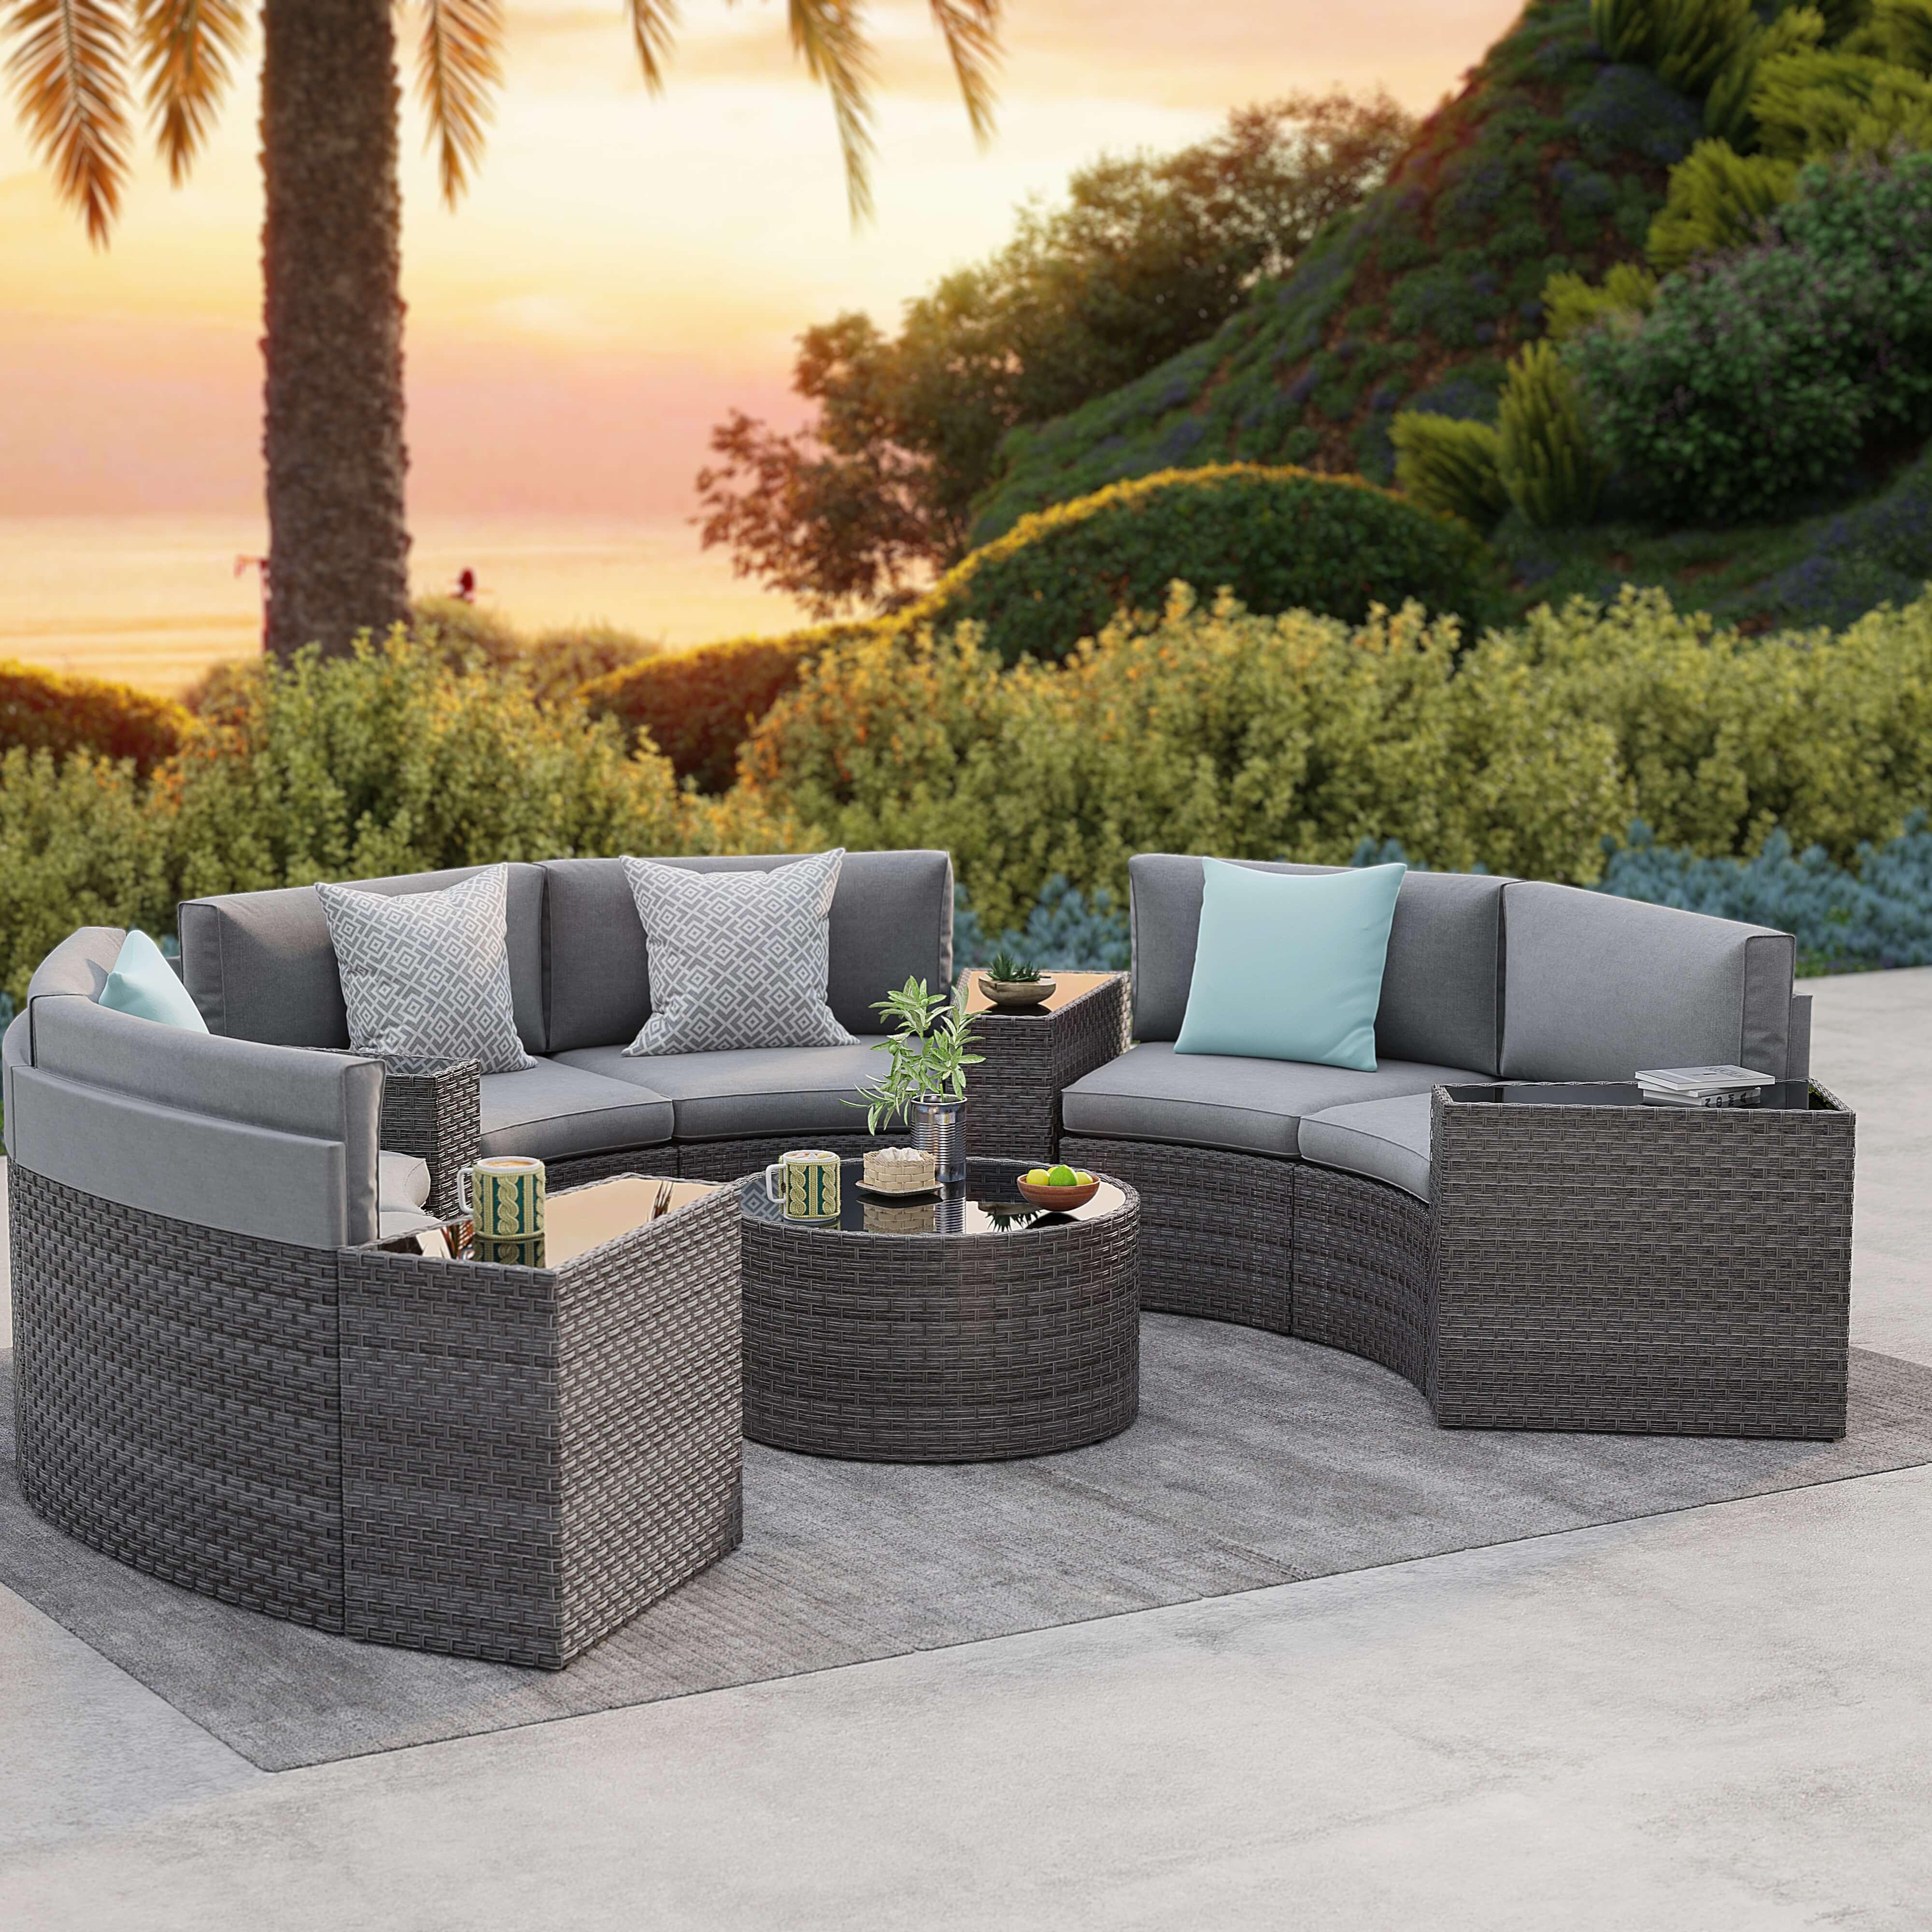 Jardina Aluminum 4 Patio Grey Conversation with | Rope Design Seat Set